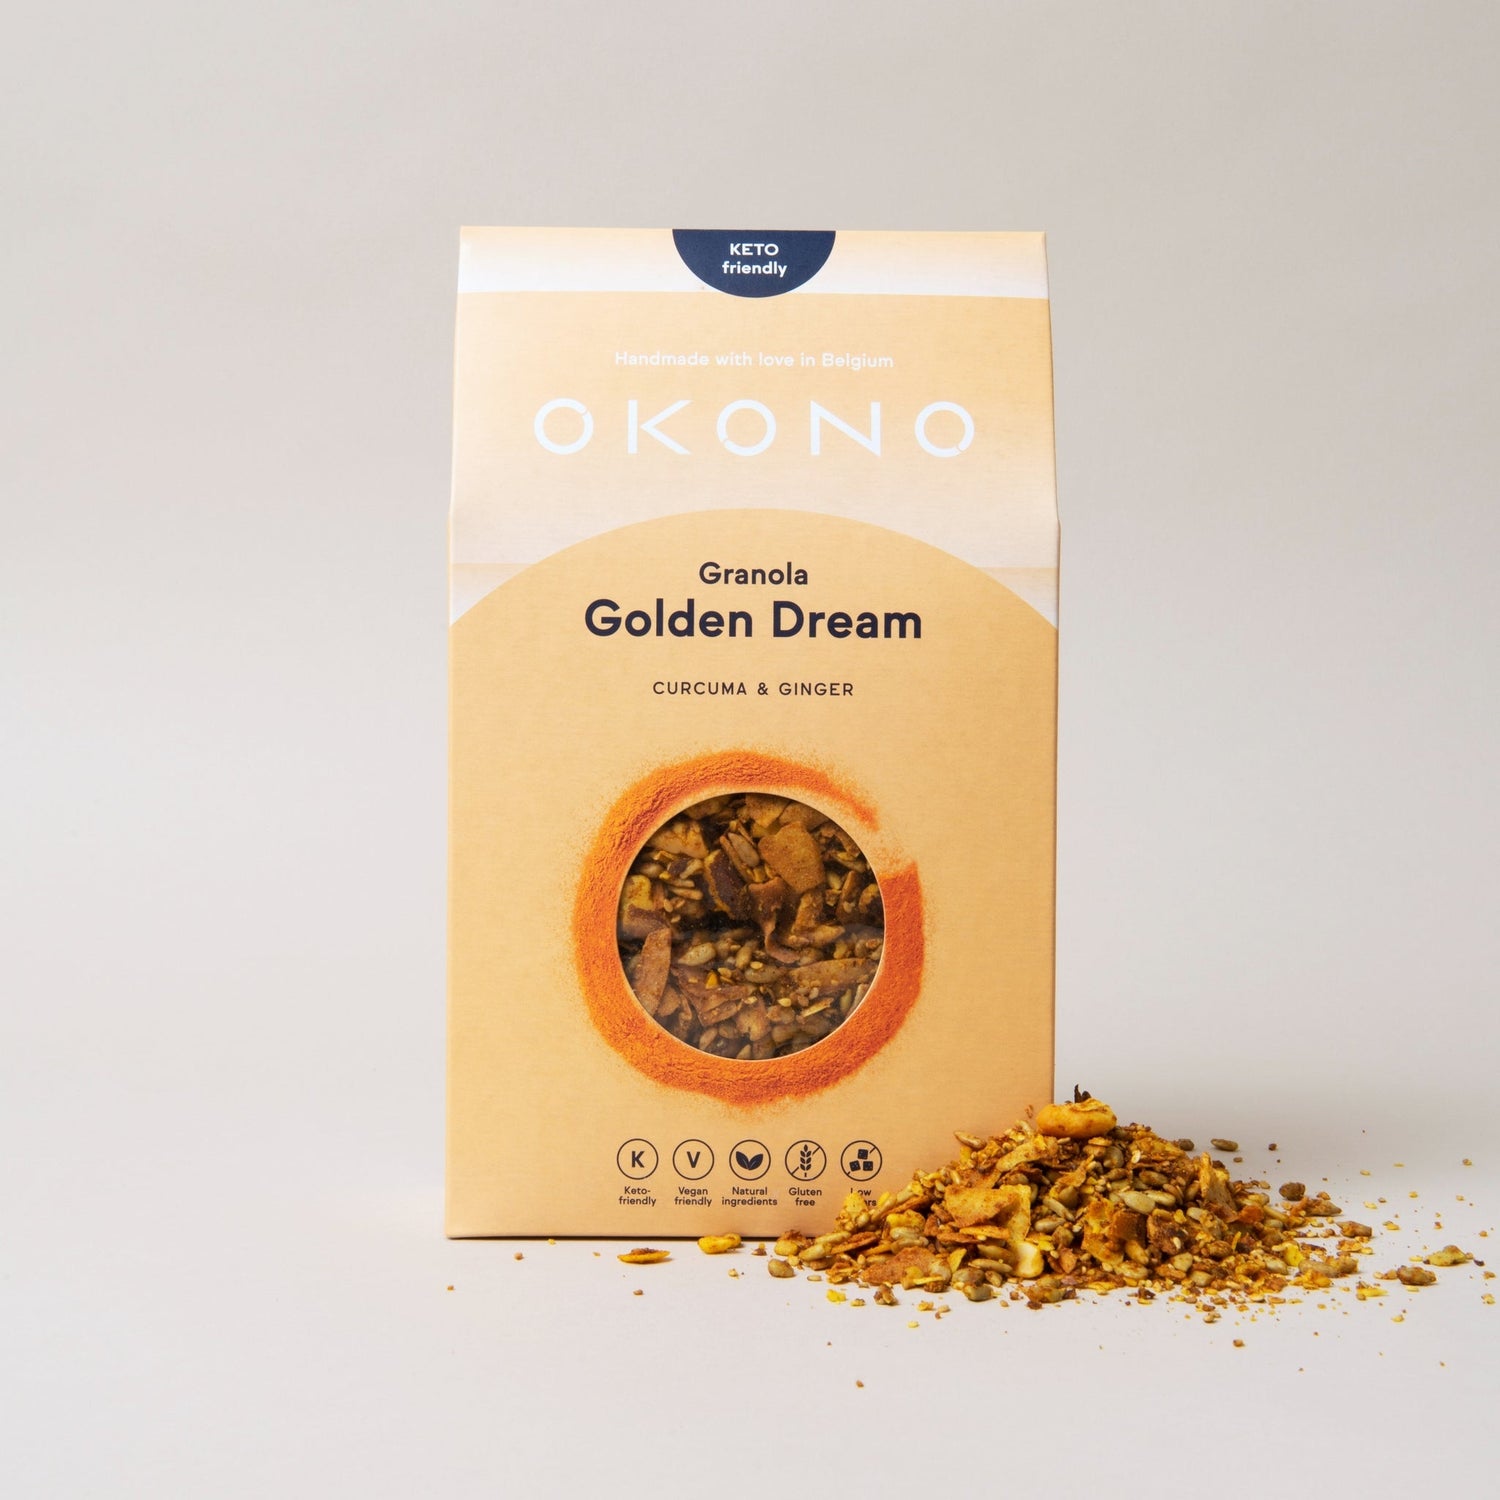 okono granola golden dream